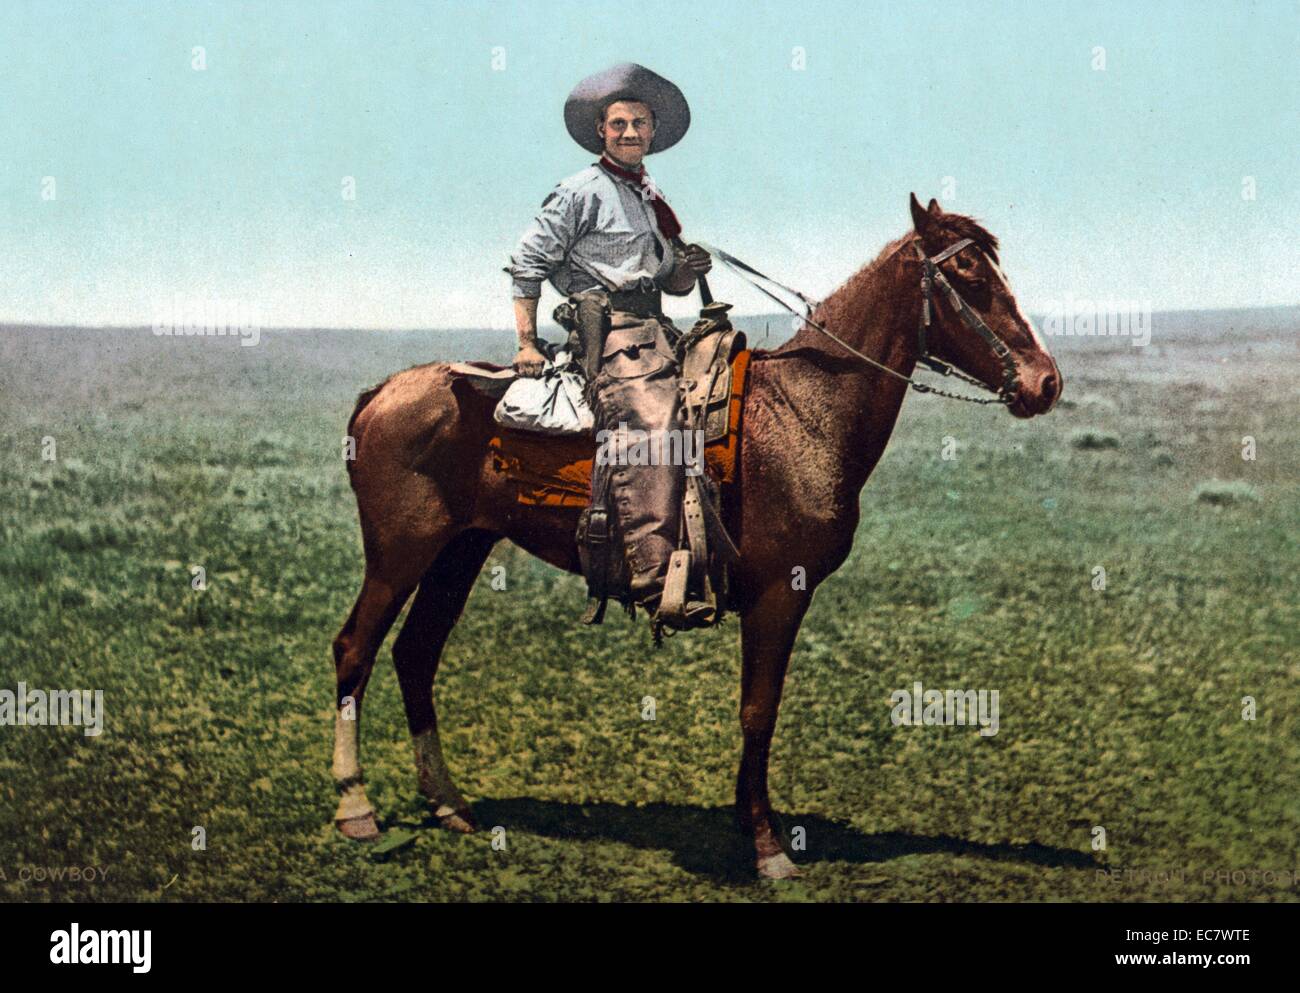 Cowboy zu Pferd, Amerika 1900 Stockfotografie - Alamy